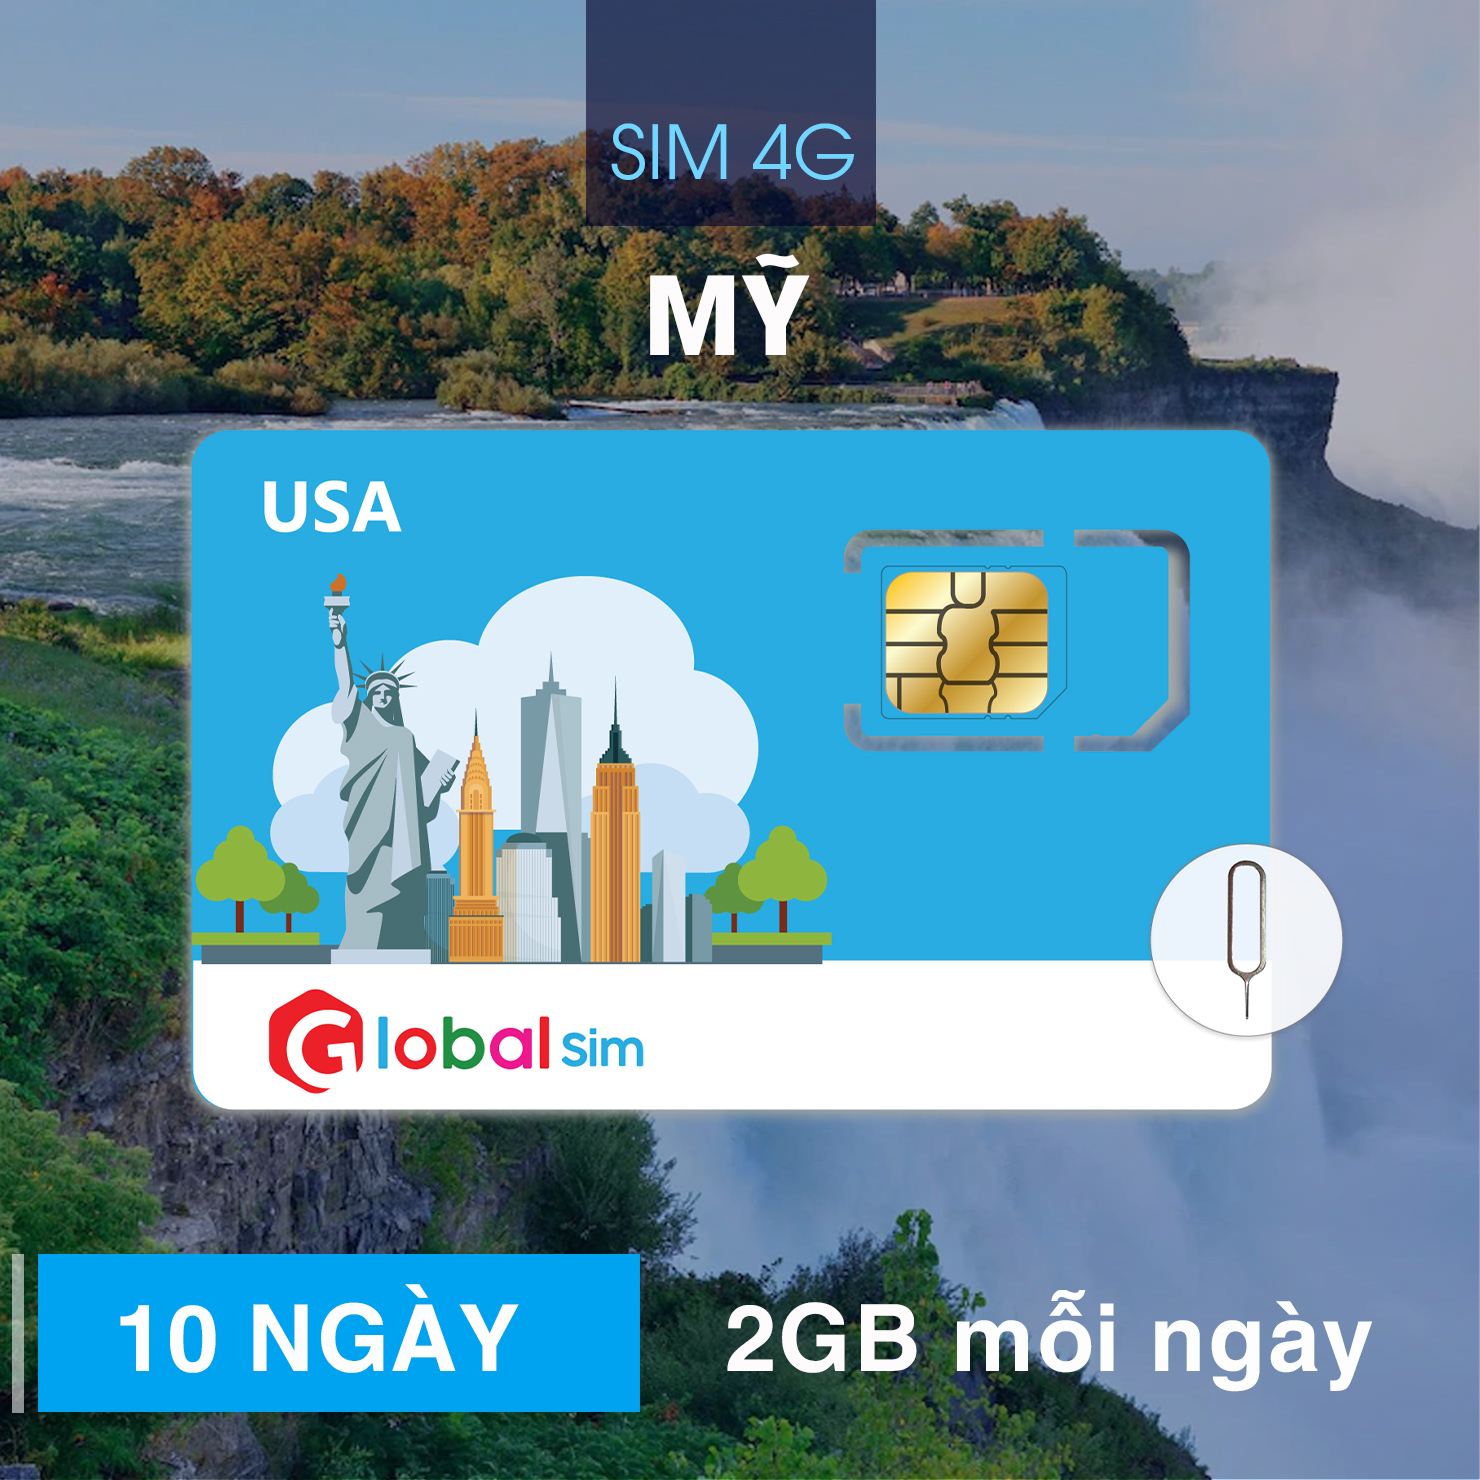 SIM 4G MỸ 10 NGÀY - 2GB/NGÀY TỐC ĐỘ CAO